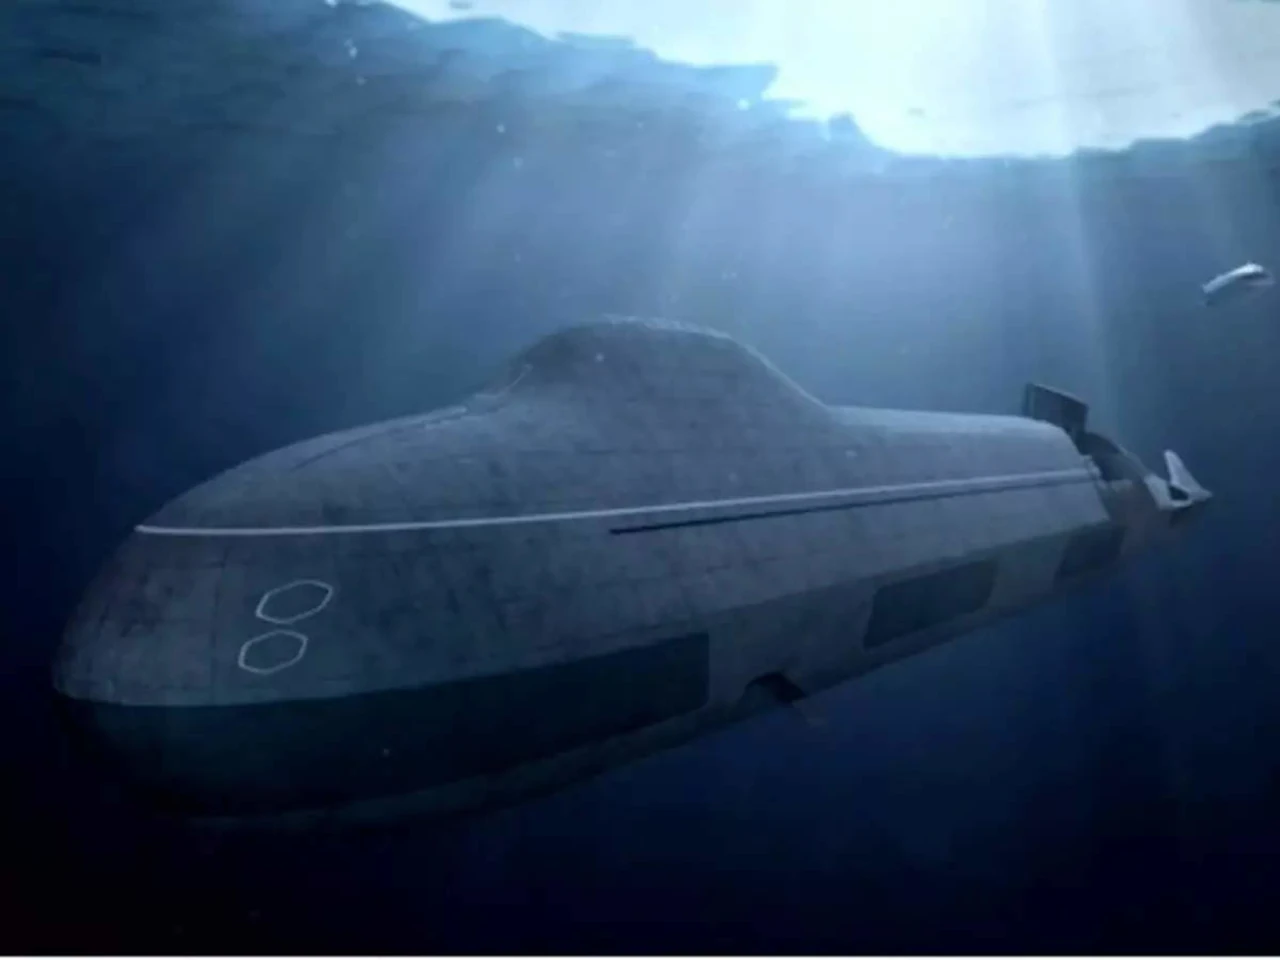 Arcturus nuclear submarine design